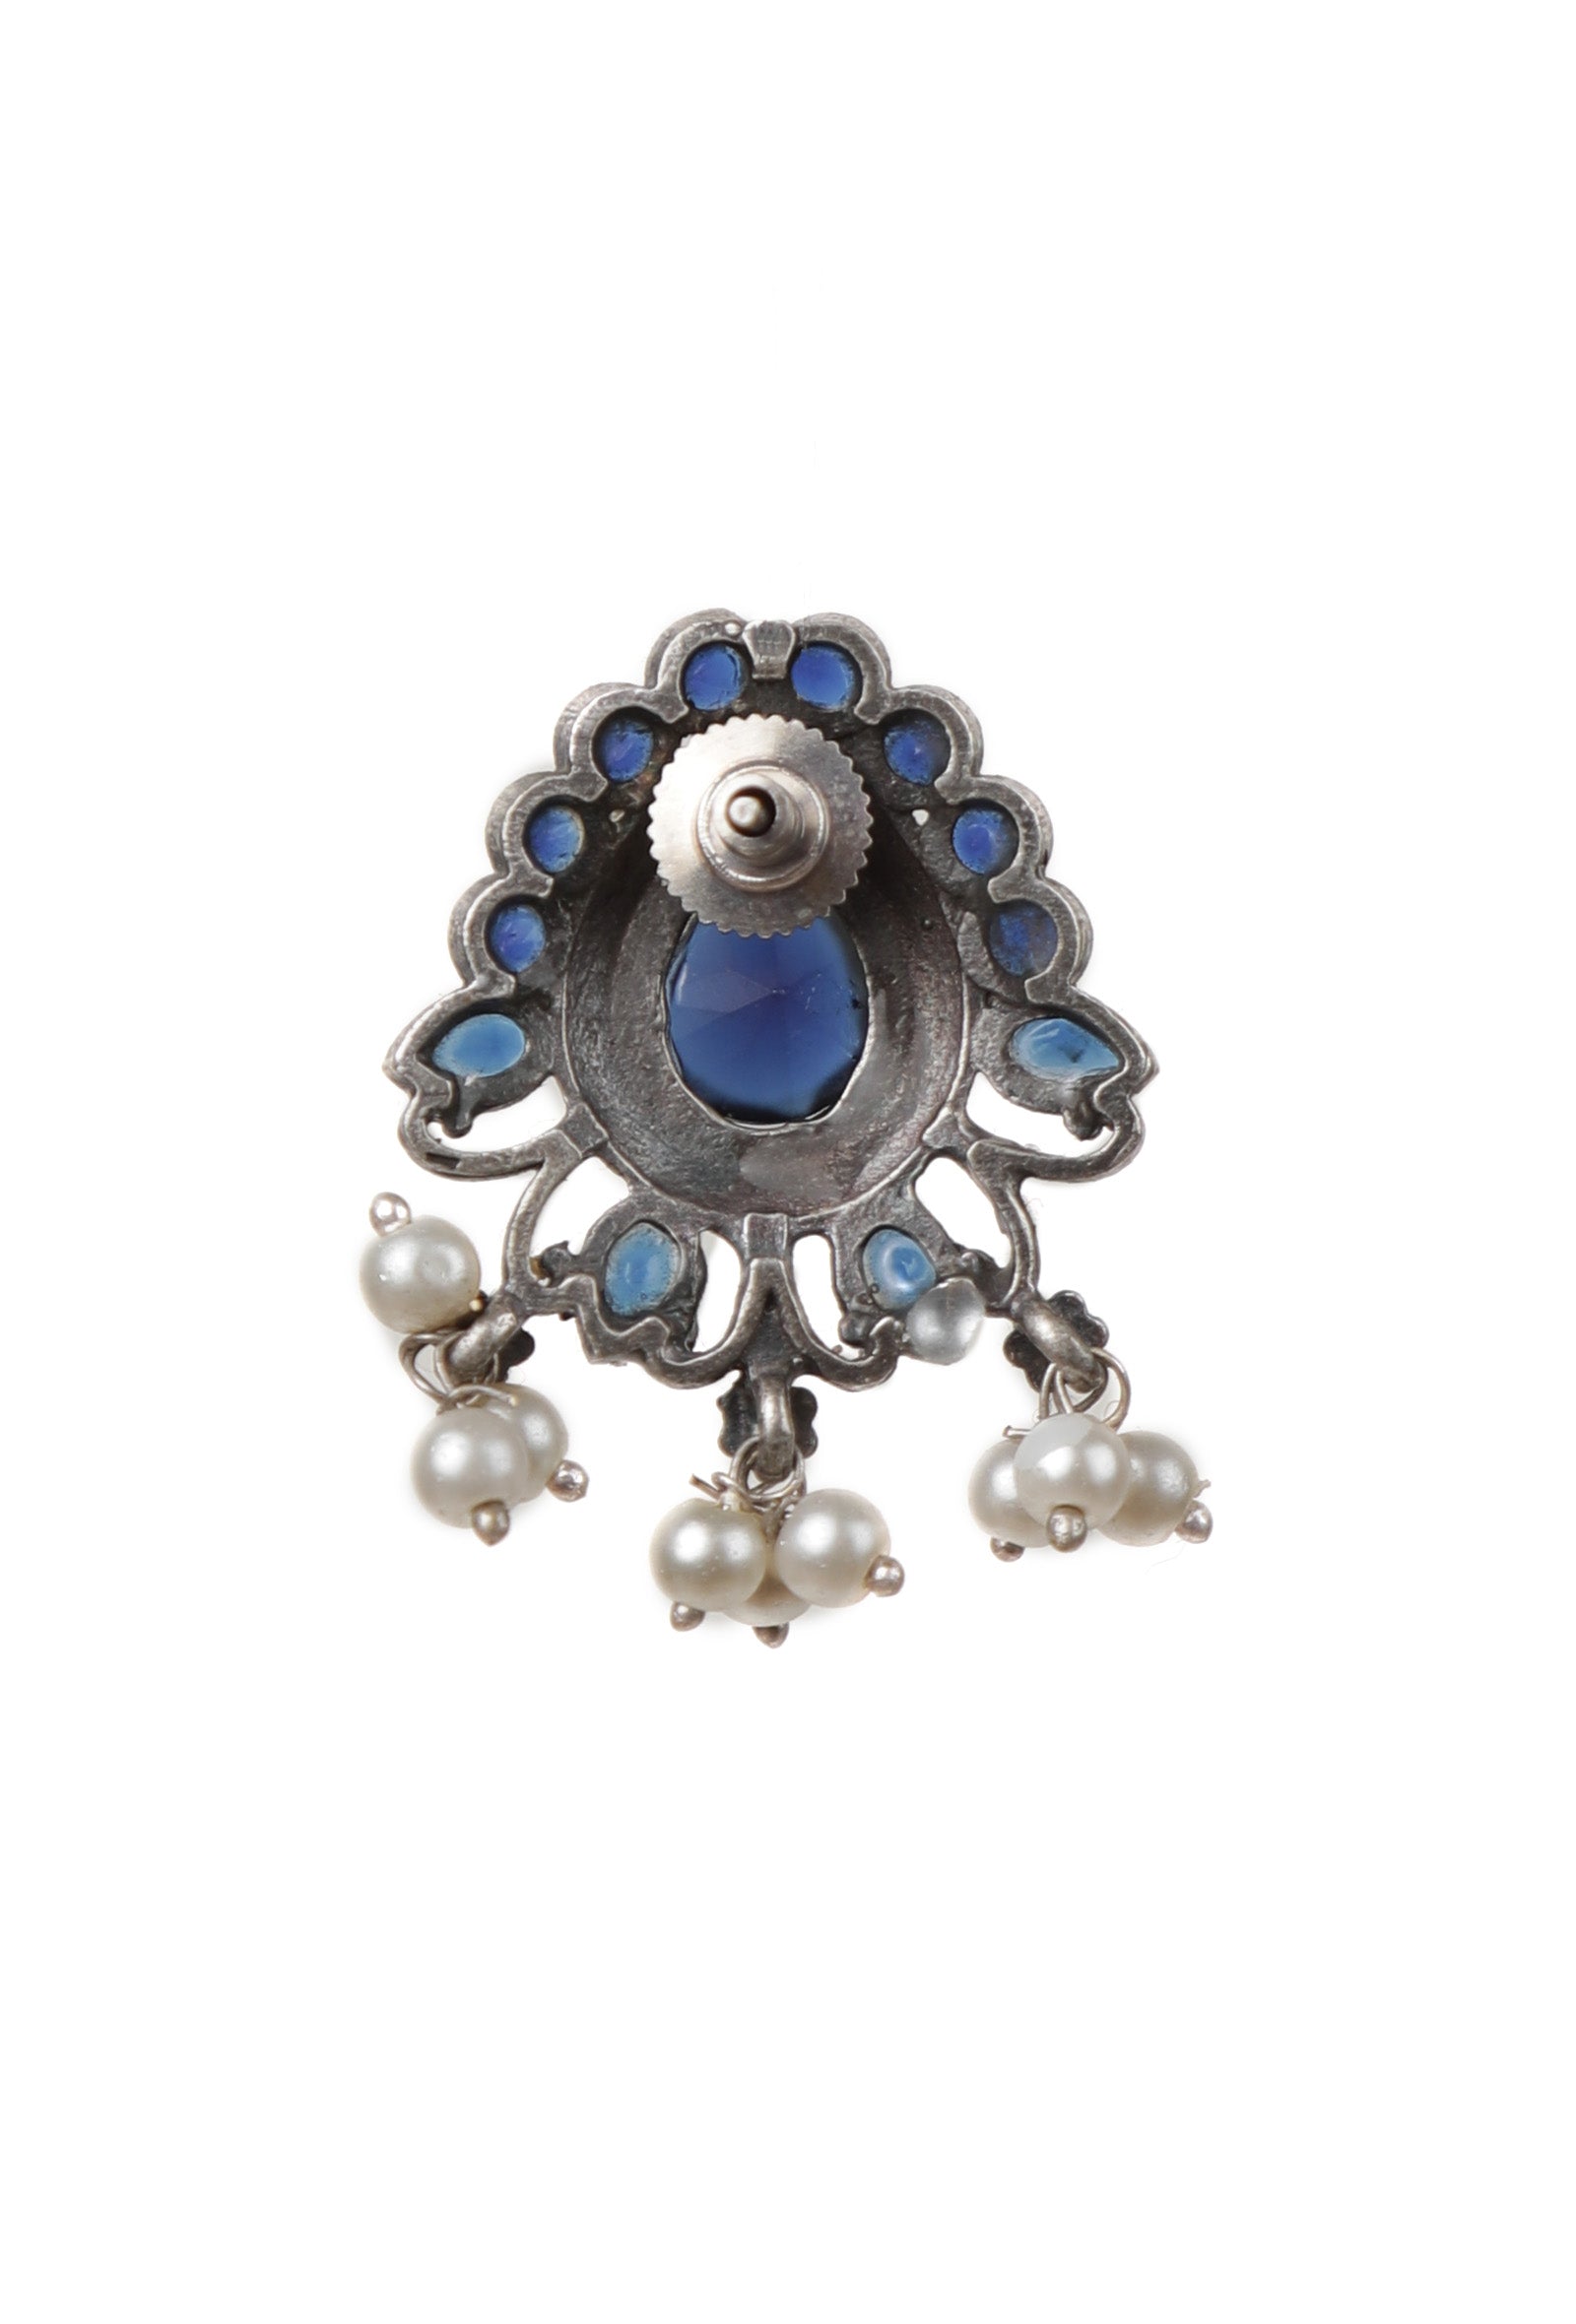 Blue Kundan Studs with Pearl Drop Earrings